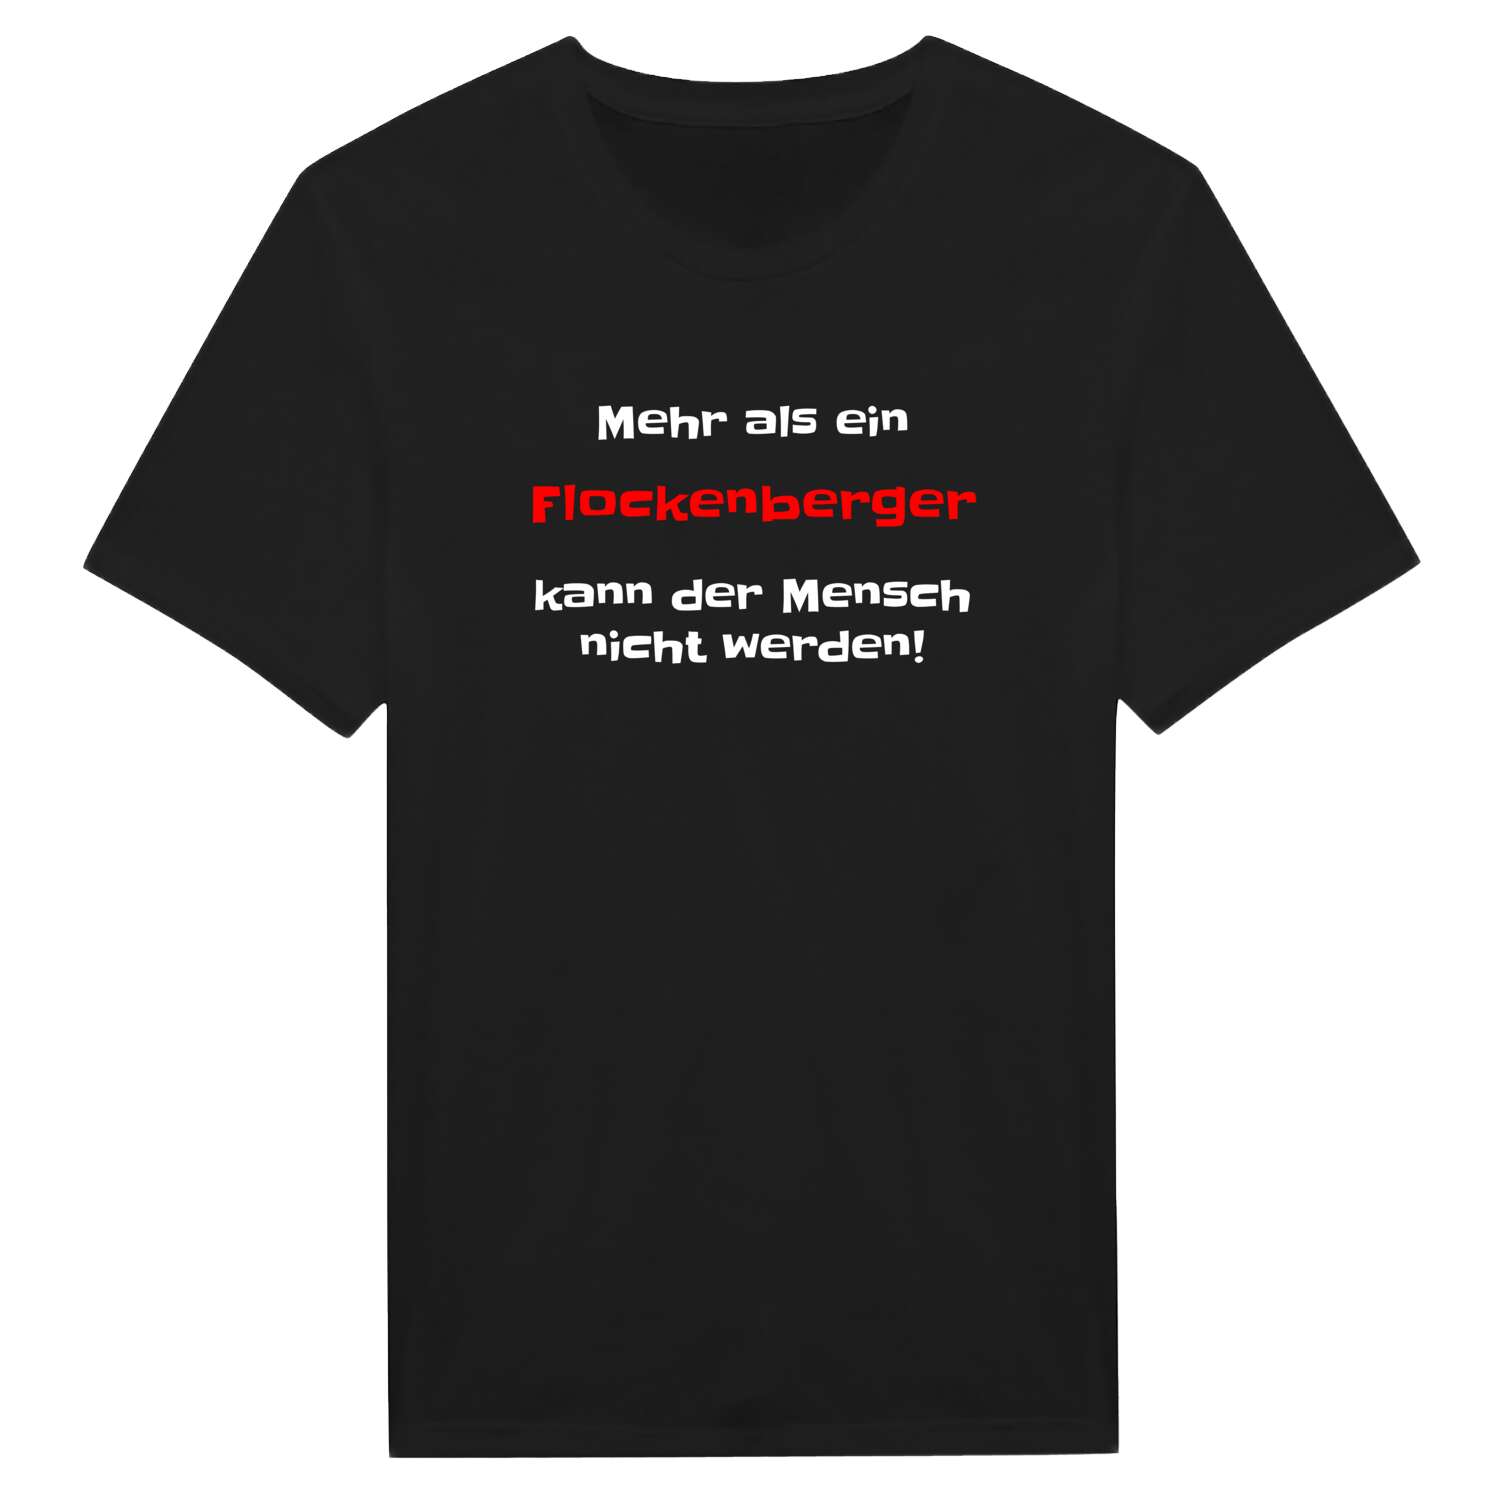 Flockenberg T-Shirt »Mehr als ein«